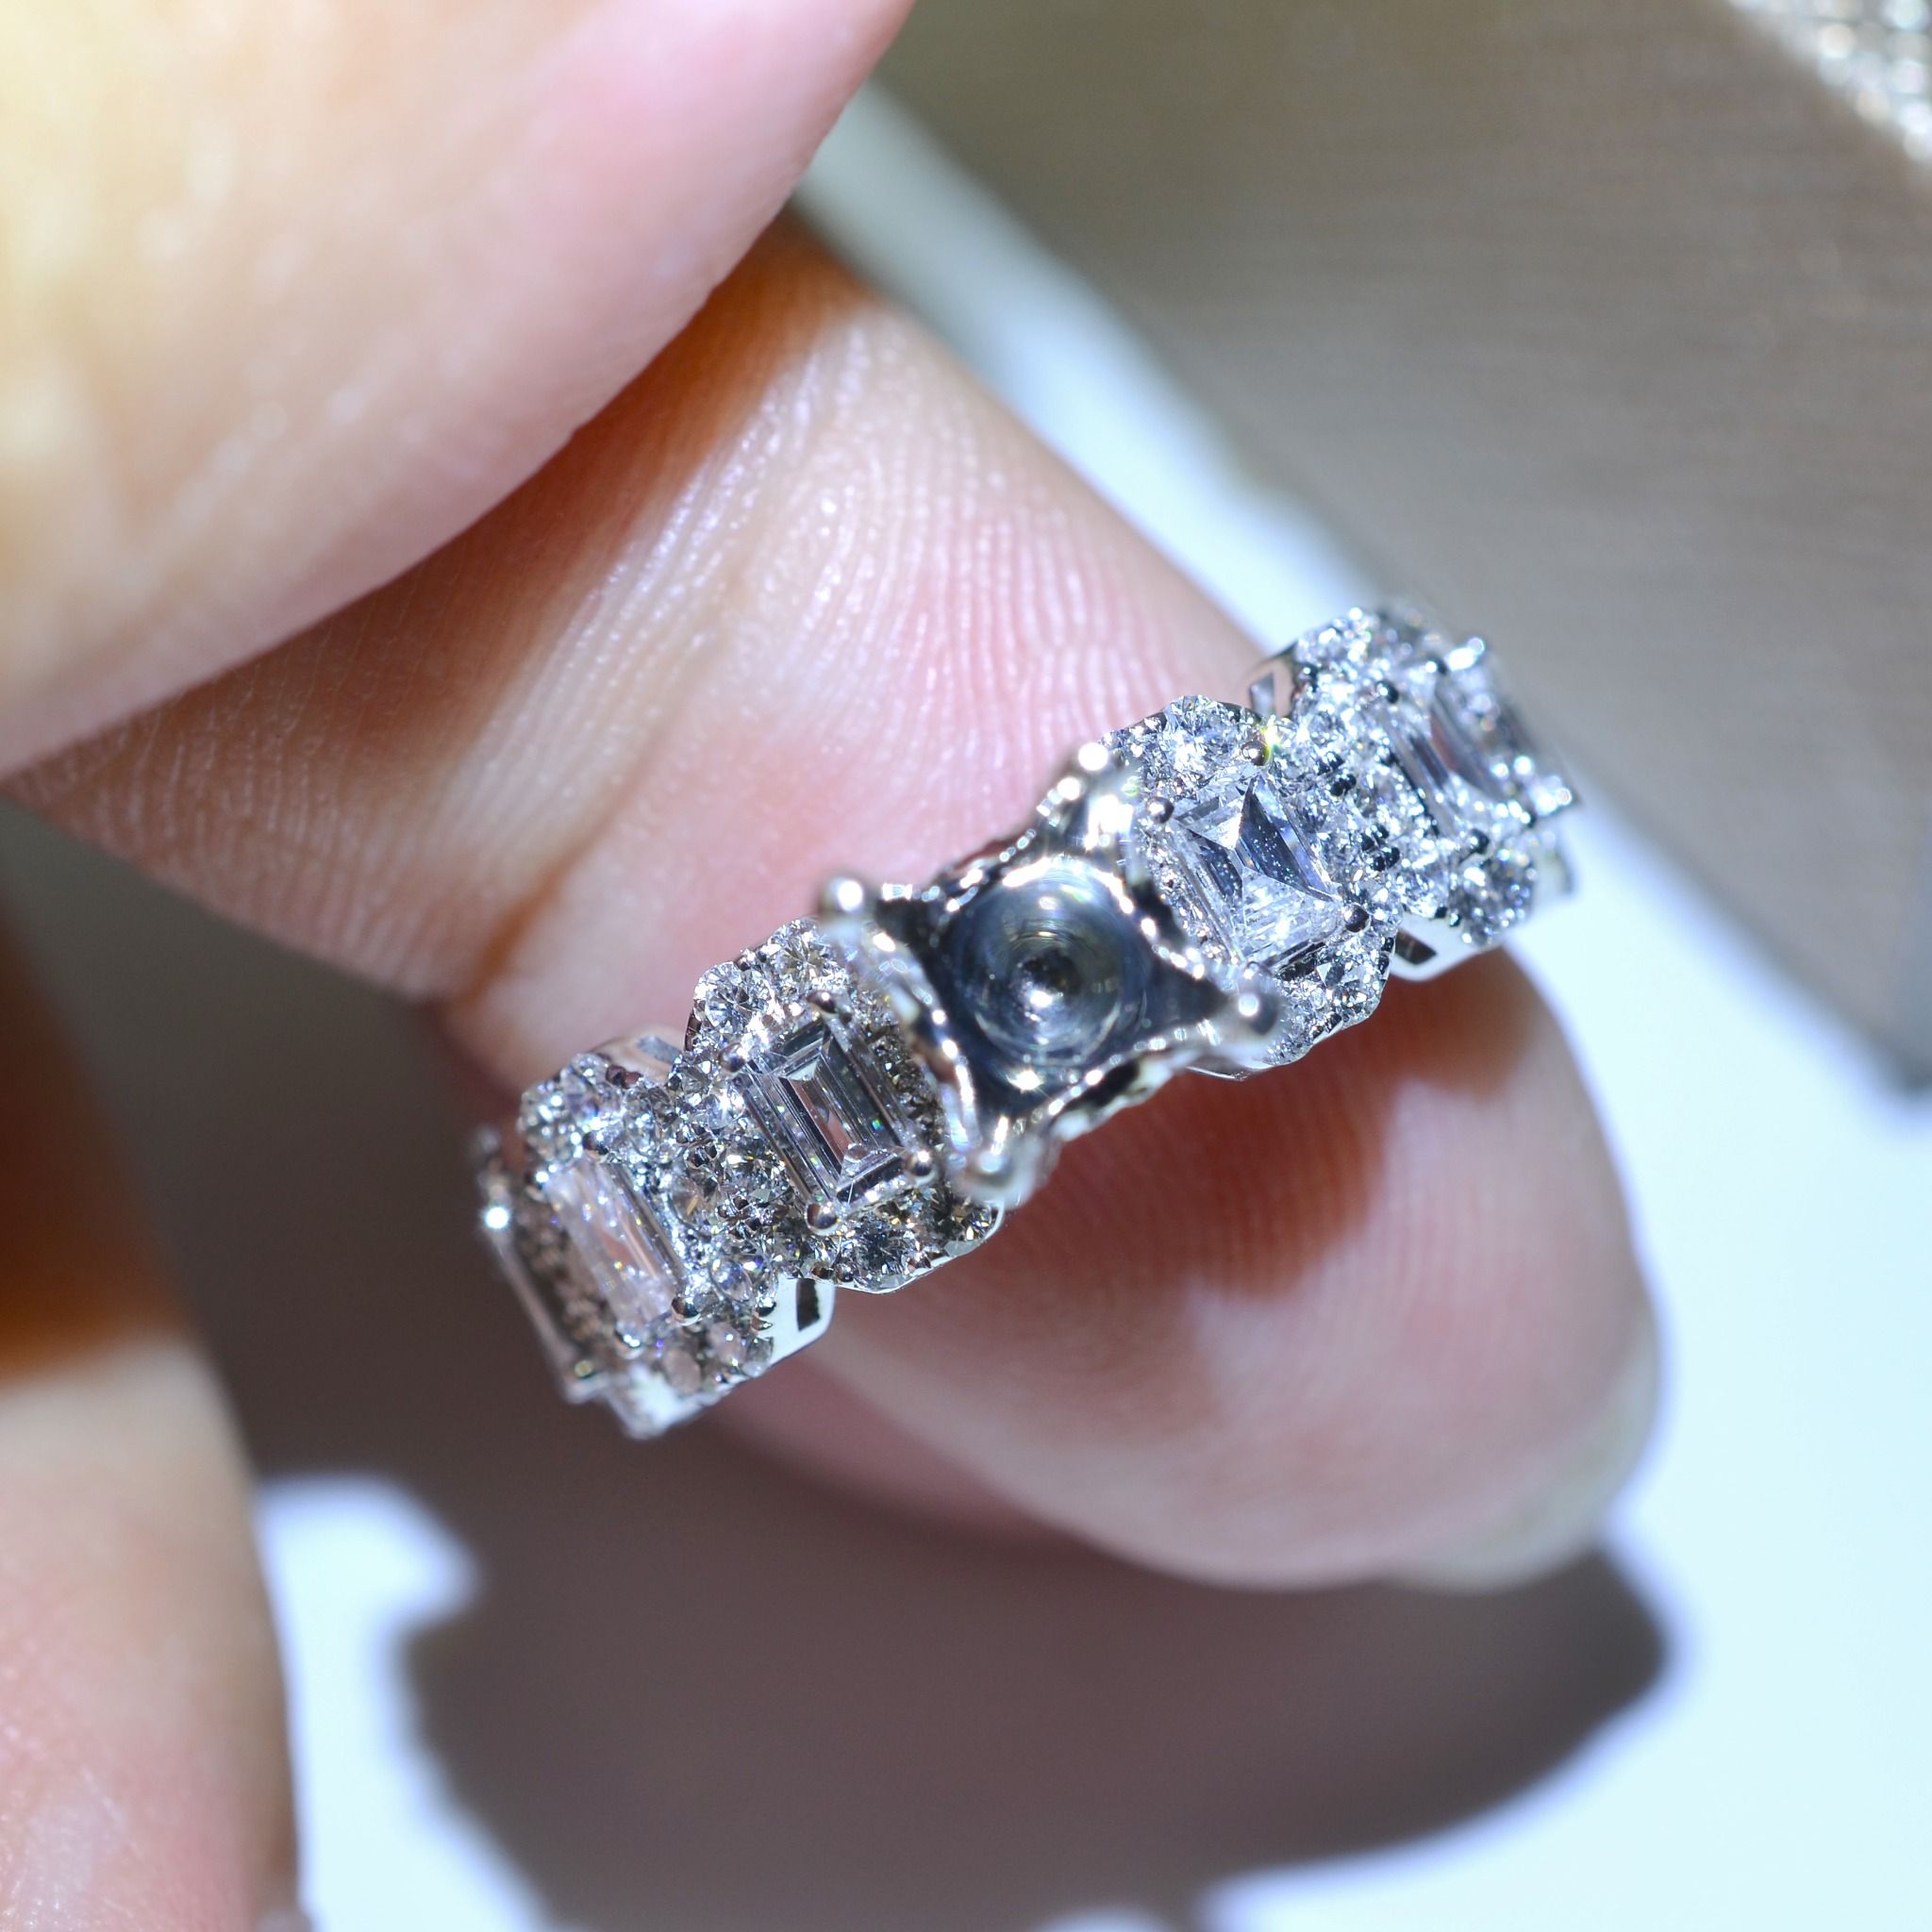  FEMALE DIAMOND RING BG3120 6.1MM (NHẪN NỮ KIM CƯƠNG BG3120 Ổ CHỦ 6.1LI) 